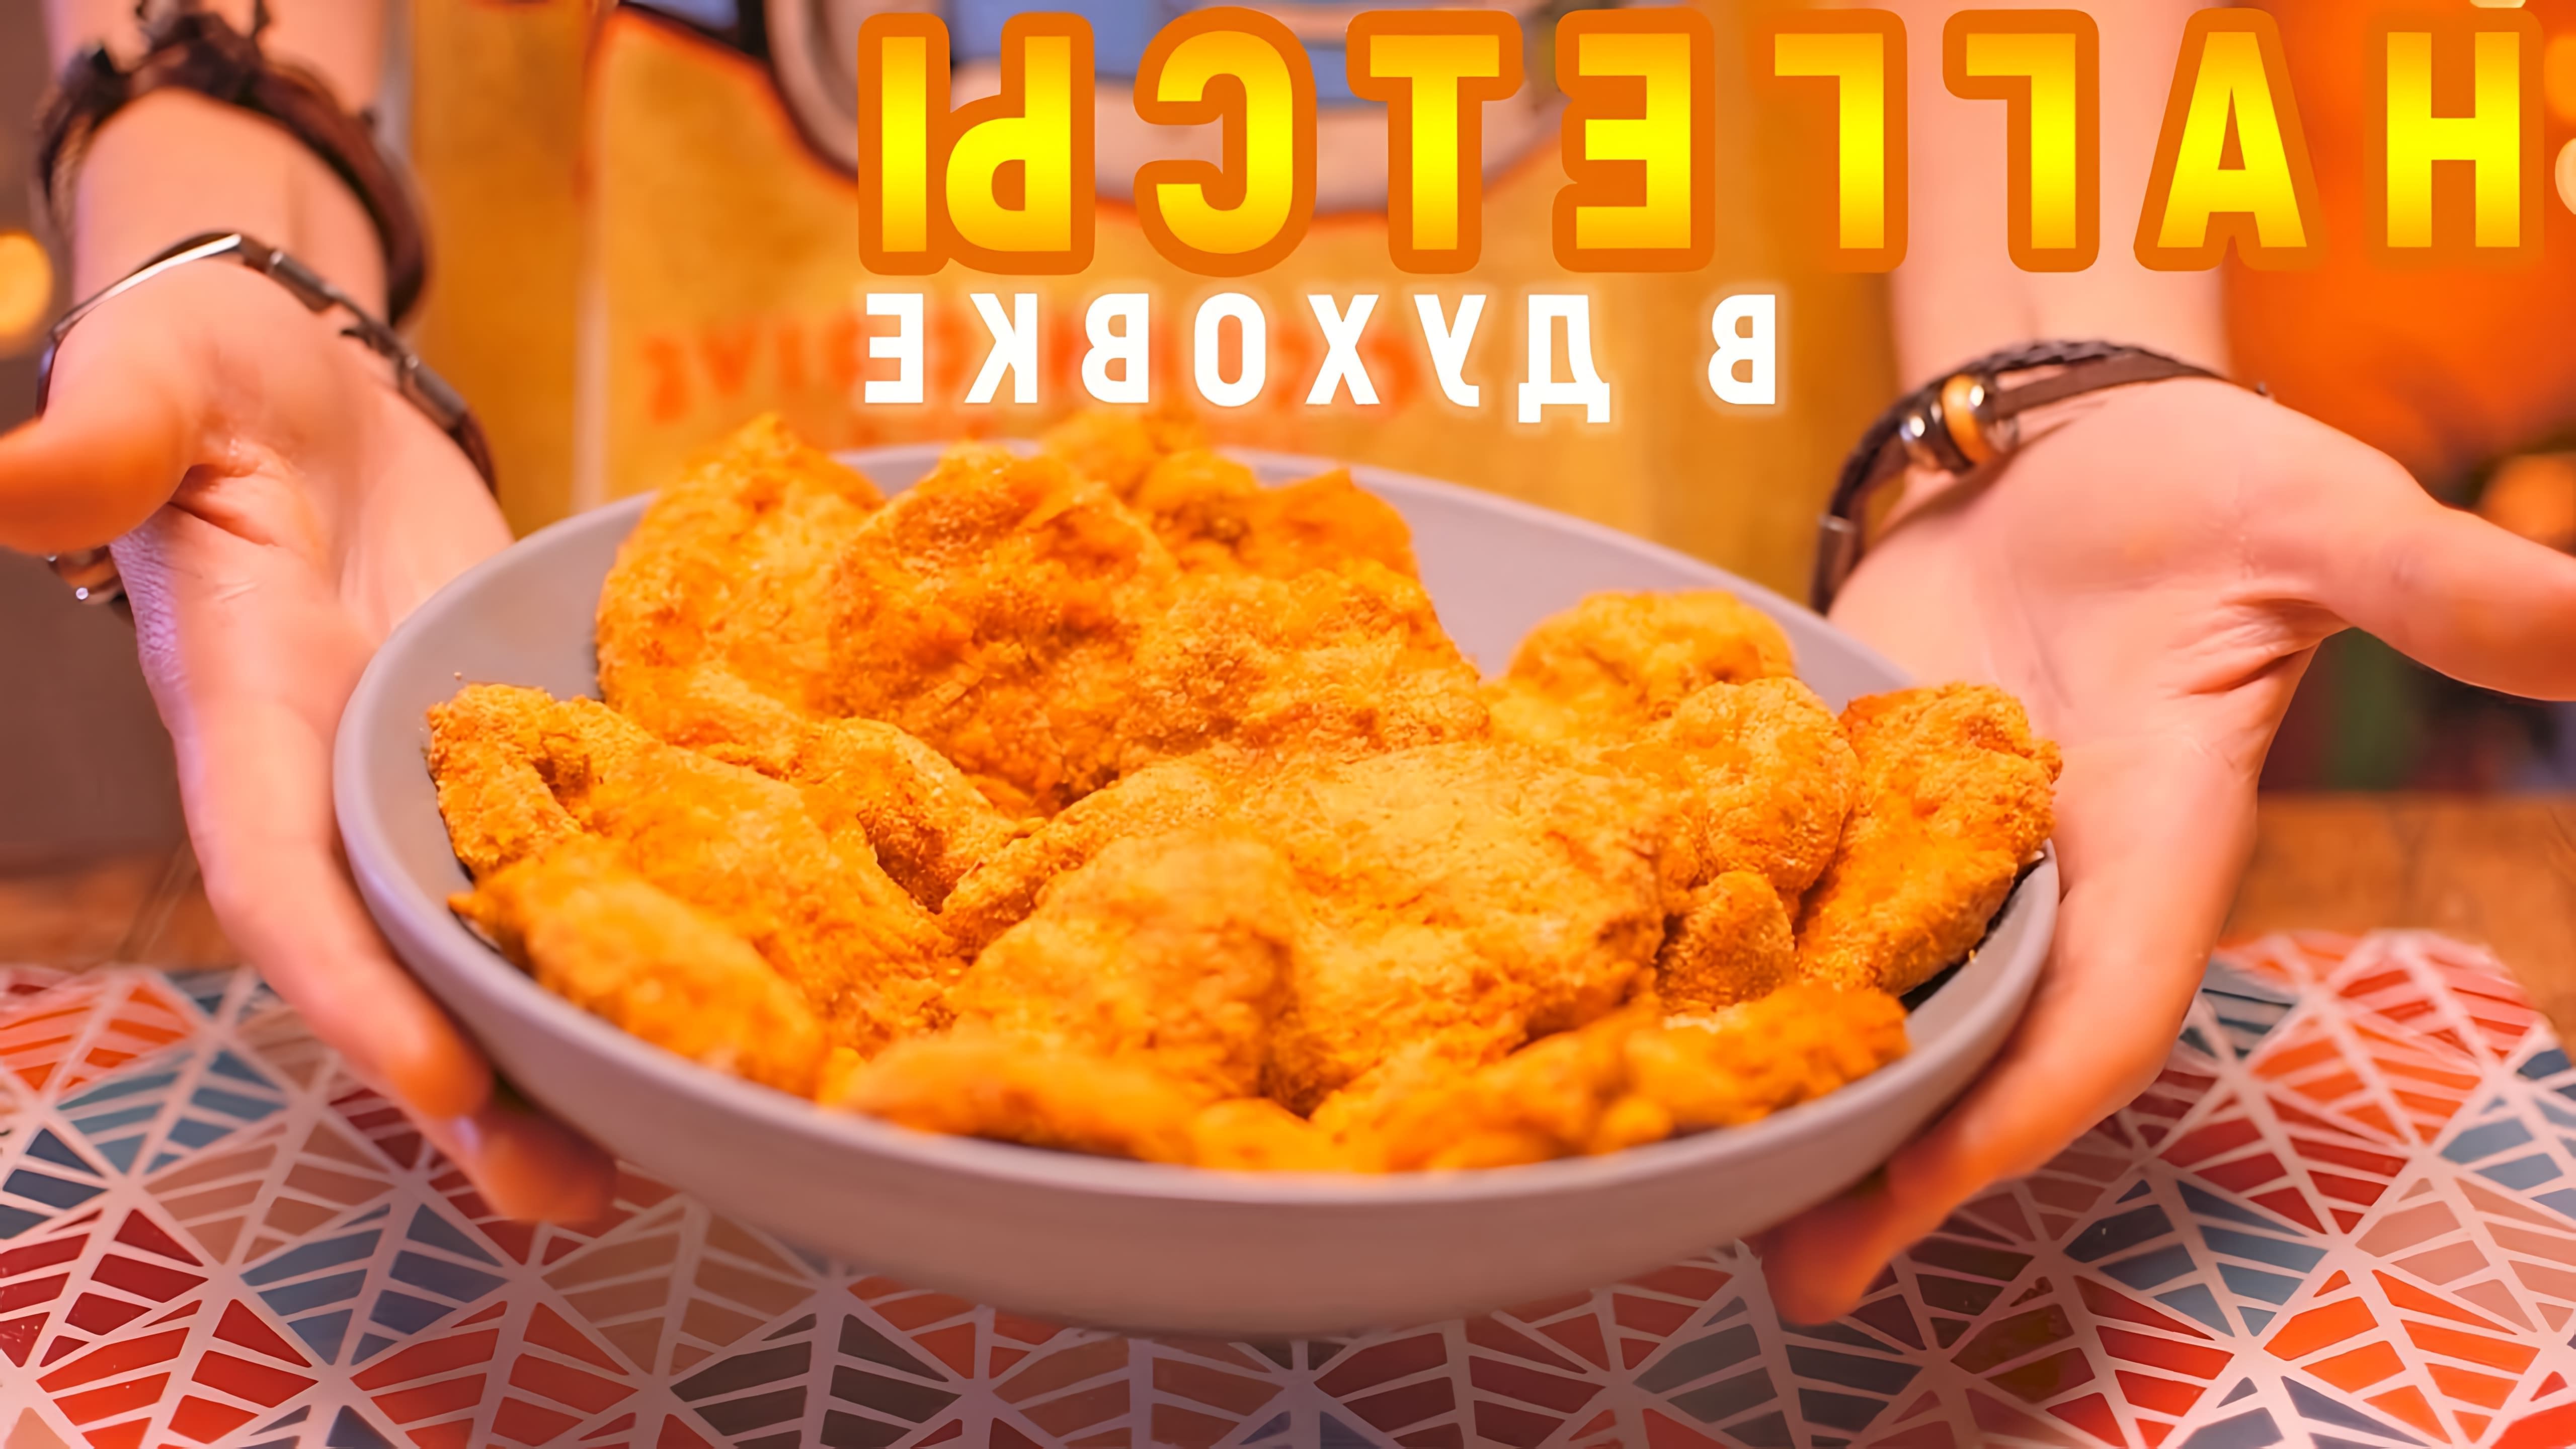 В этом видео демонстрируется рецепт приготовления куриных наггетсов в духовке без использования фритюра